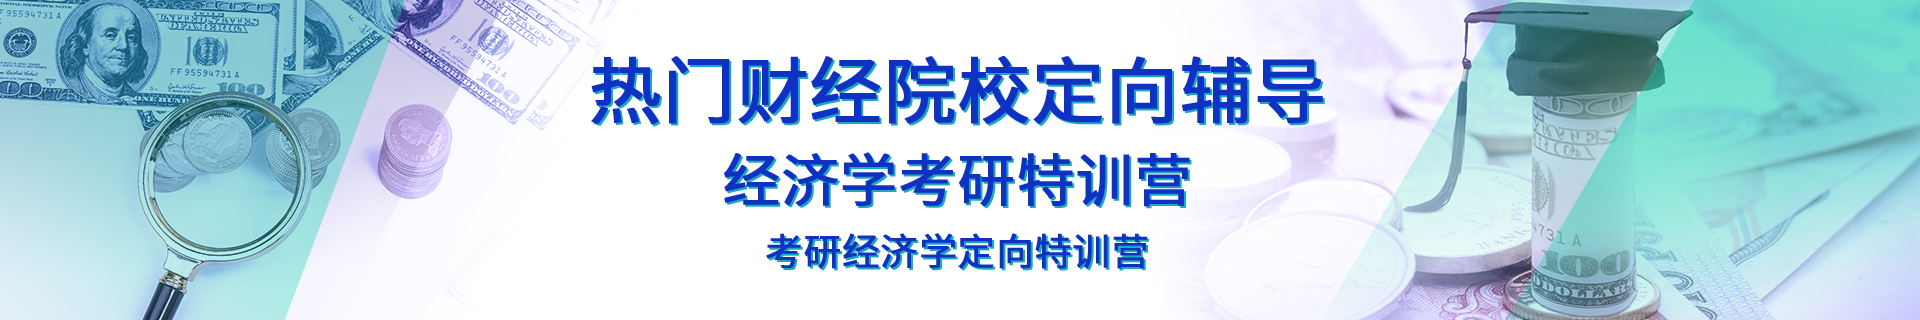 北京朝阳跨考教育培训机构